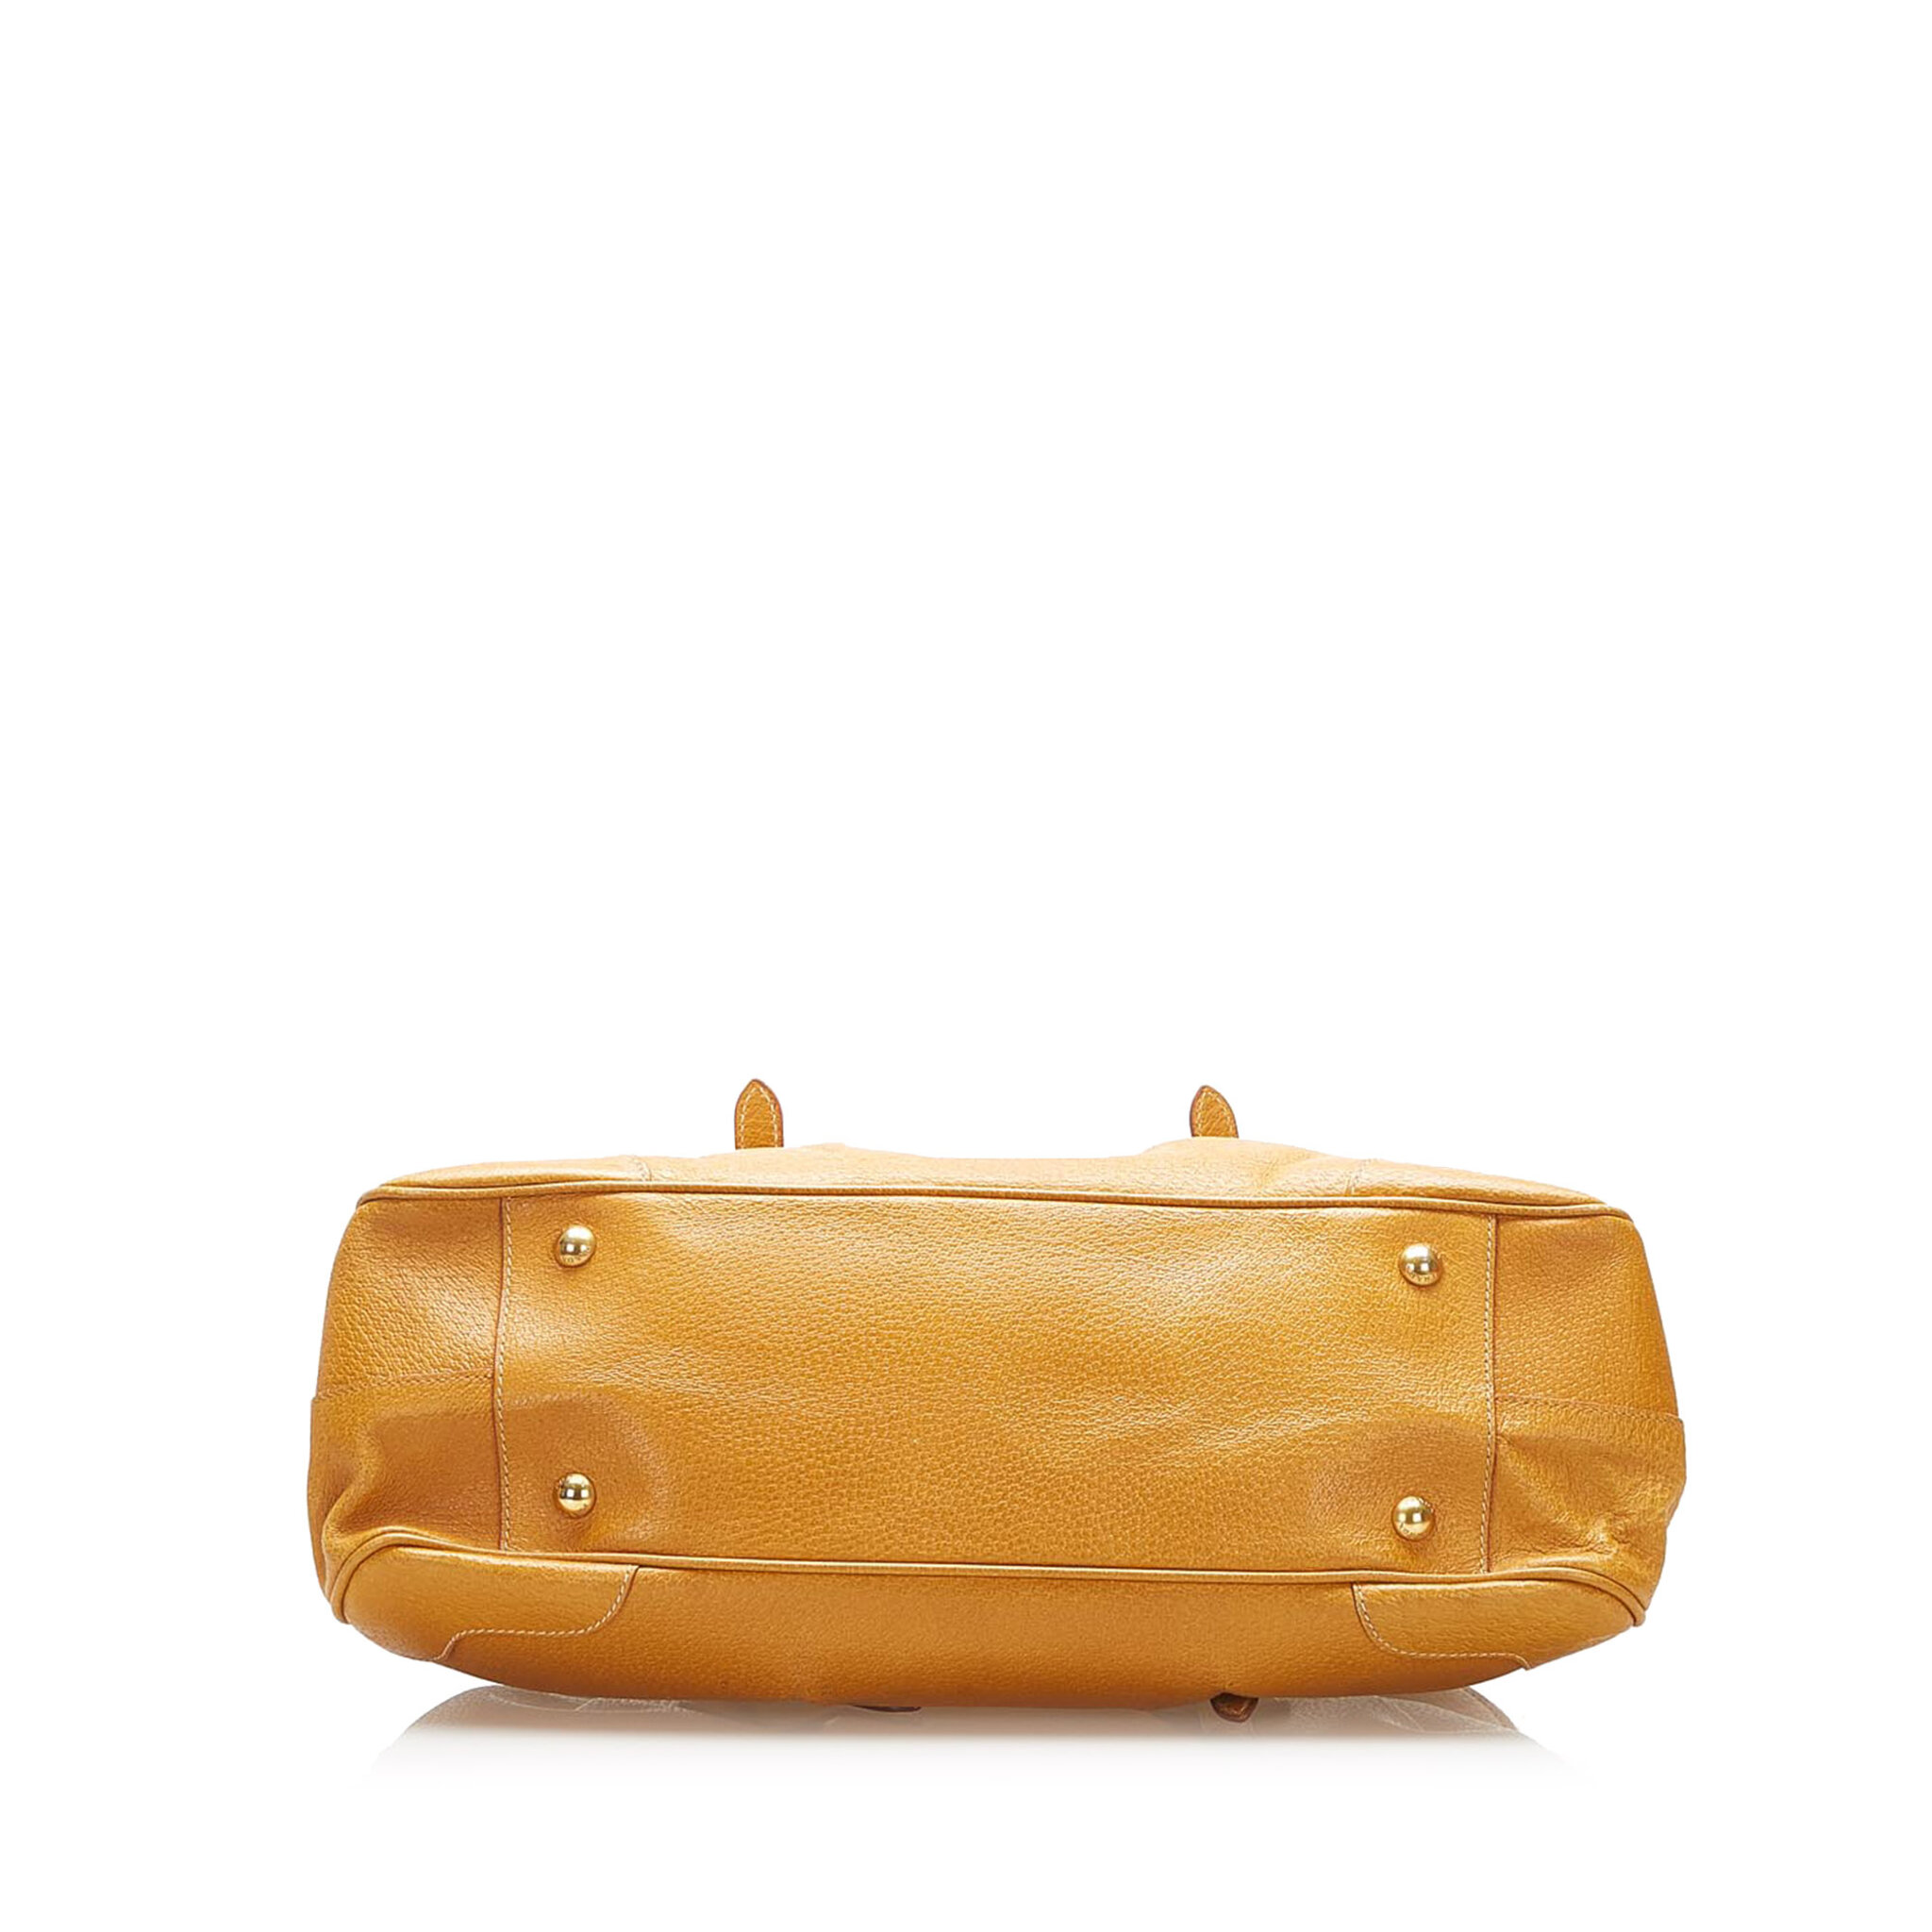 Prada Frame Leather Handbag, brown, brown